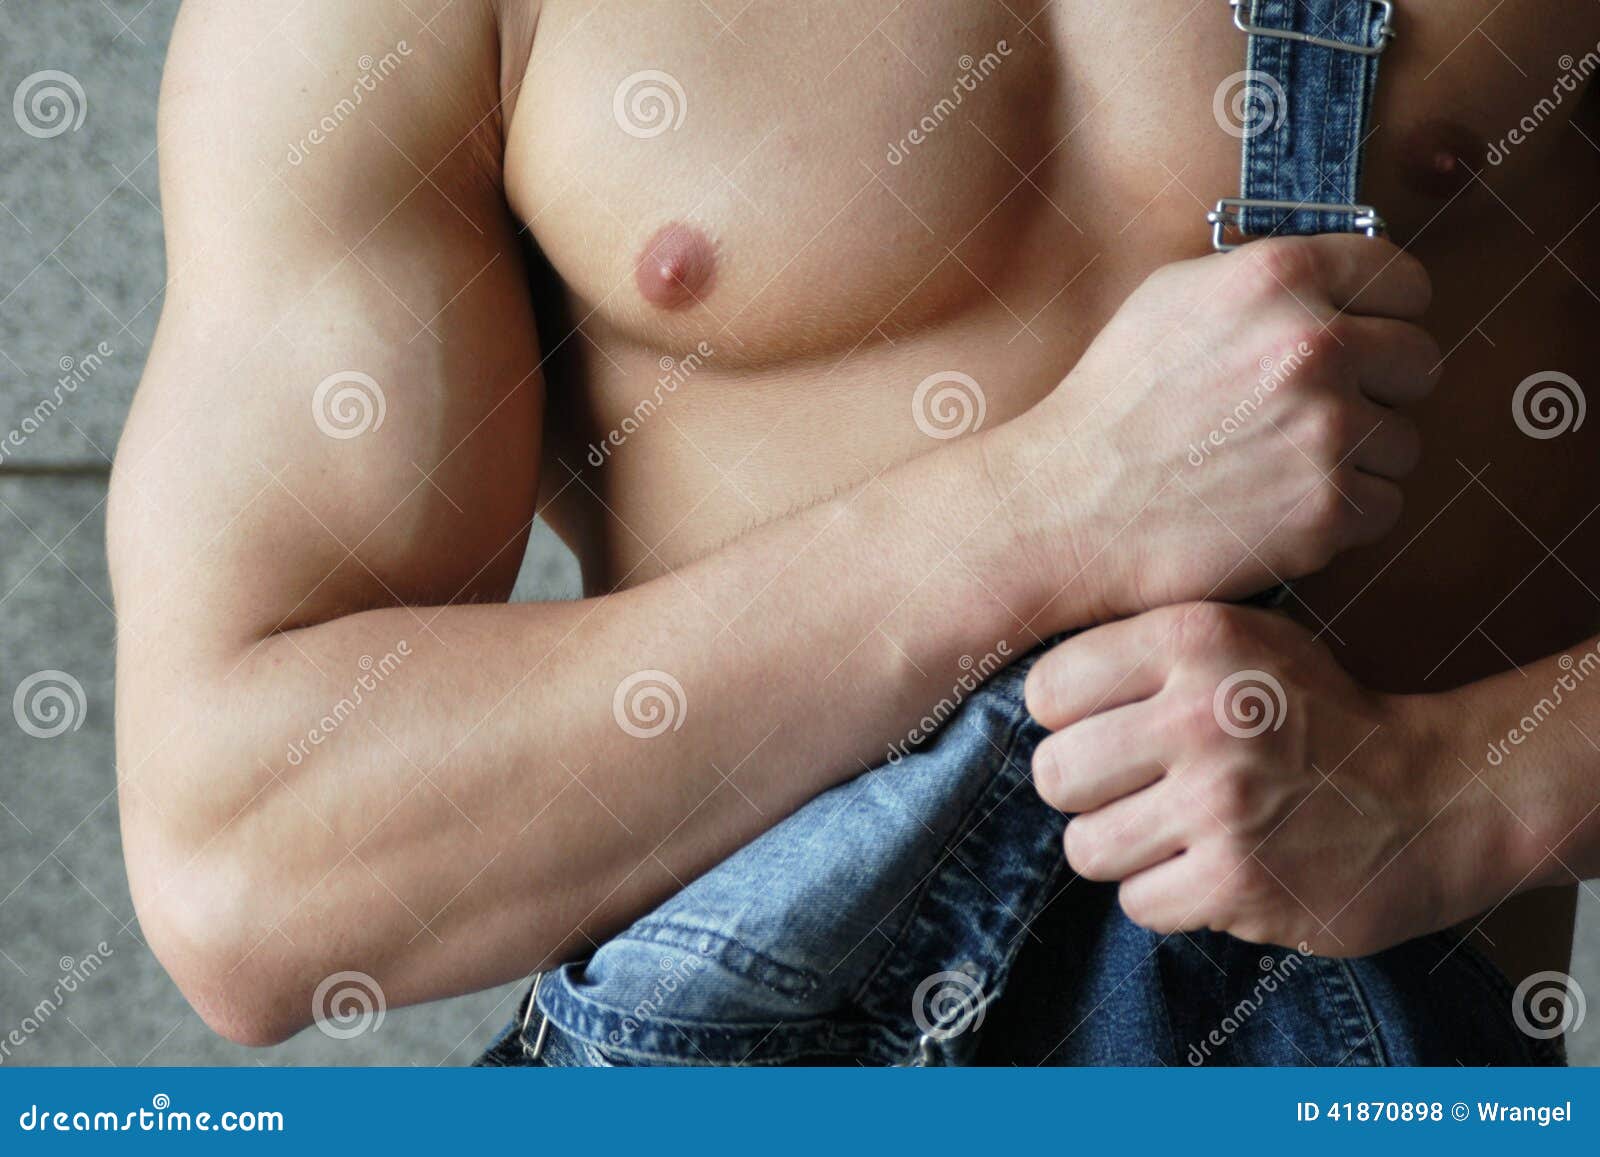 мужская грудь с сосками фото 9